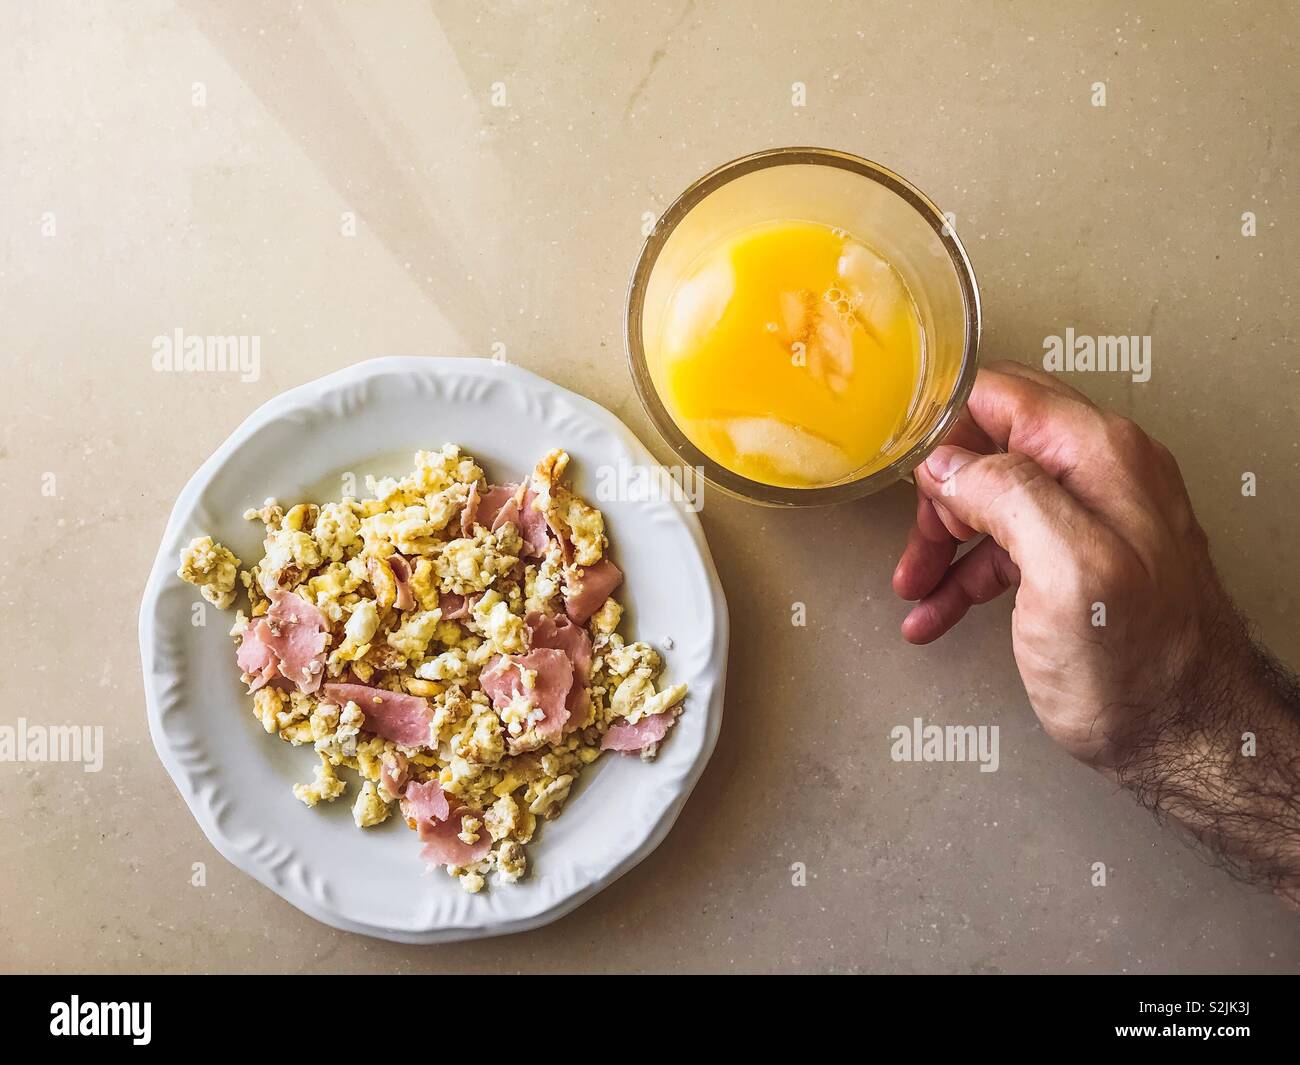 Perspectiva Personal de un hombre desayunando con huevos revueltos y jugo de naranja Foto de stock